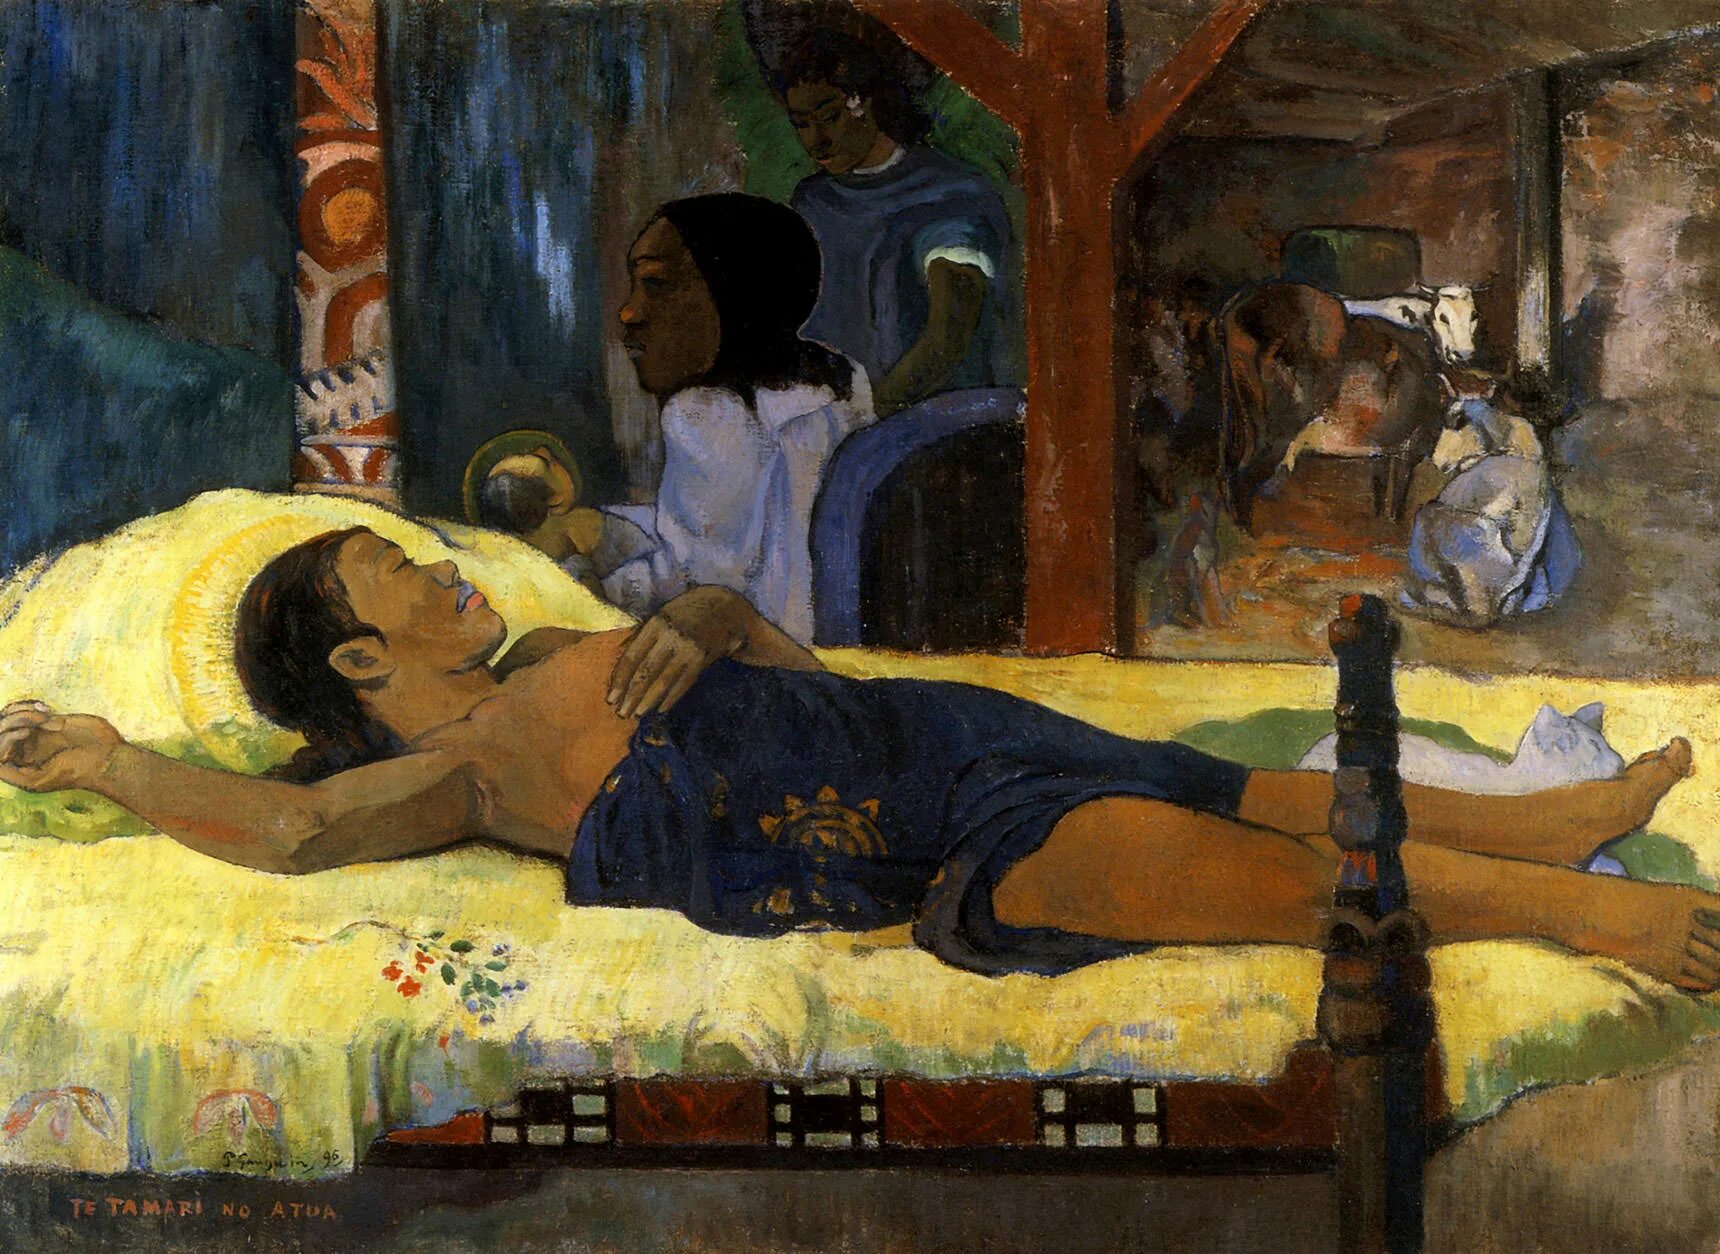 Поль Гоген. "Рождество. Te Tamari no atua". 1896. Поль Гоген Рождество. Поль Гоген Таити. Paul Gauguin художник. У гогена родился ребенок